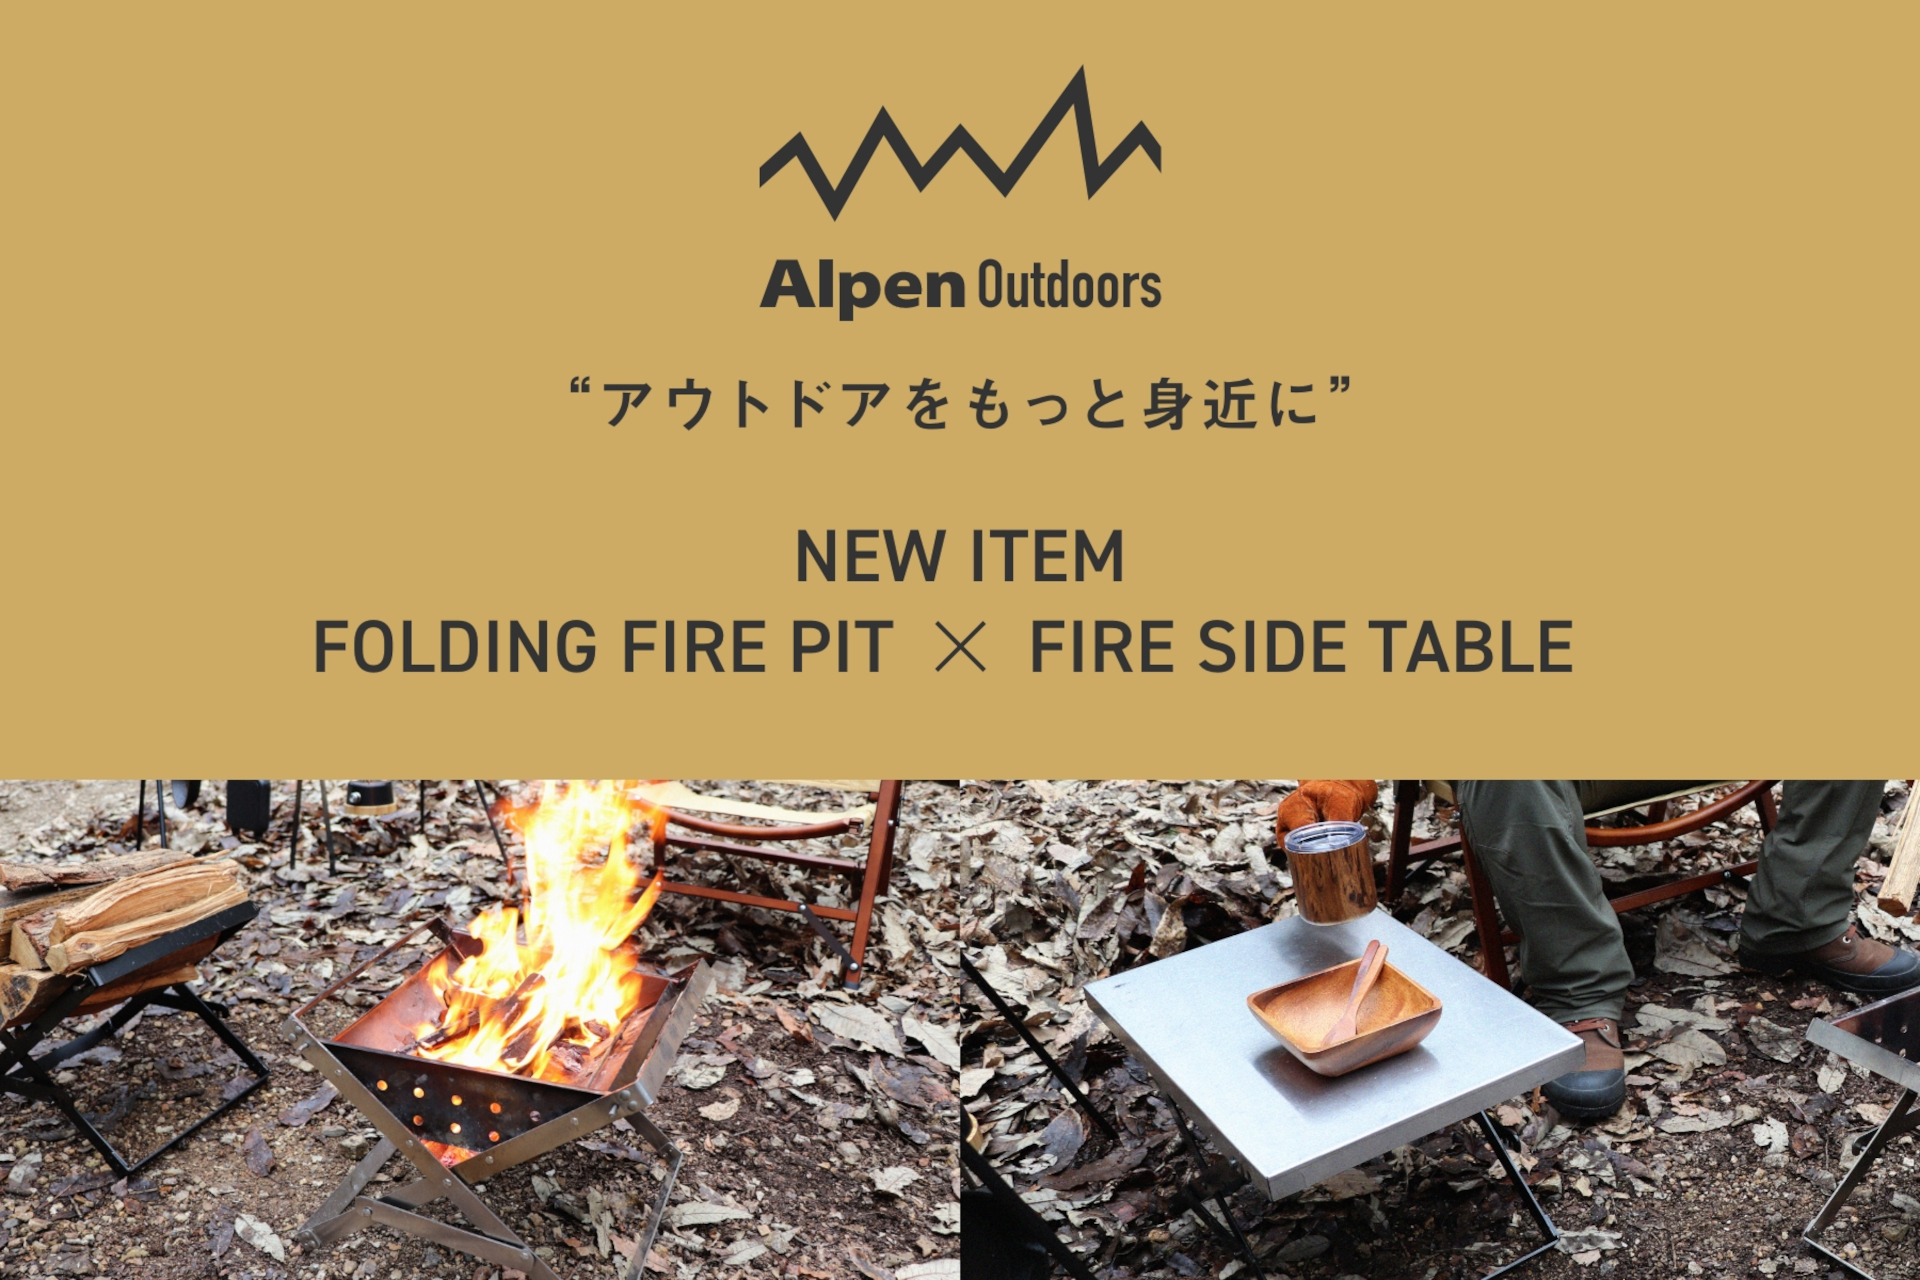 アルペンアウトドアーズ、耐久性に優れた焚き火台と天板着脱式の焚き火